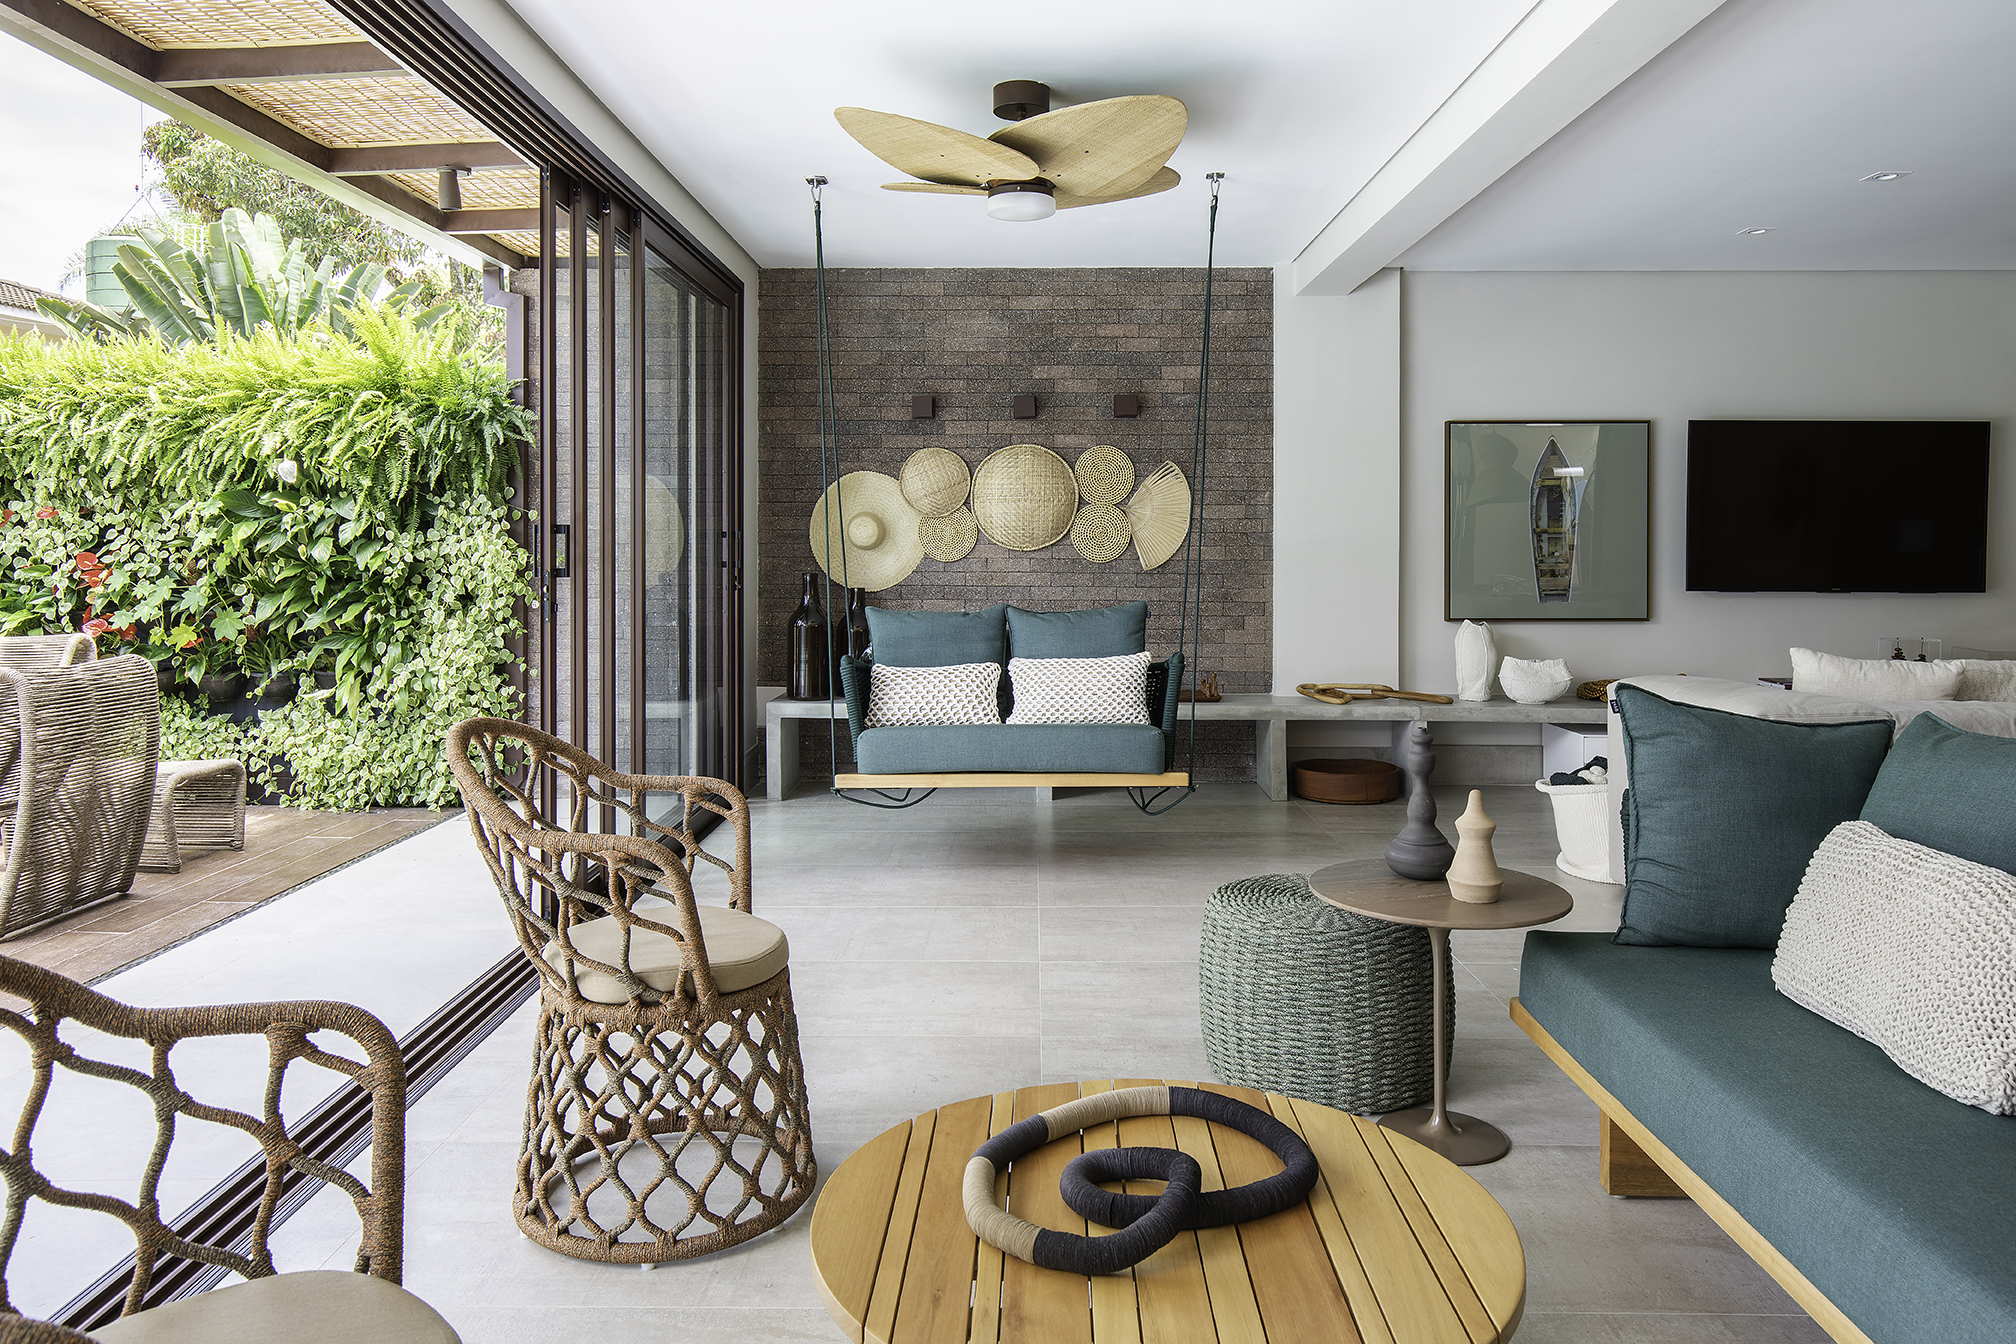 Materiais naturais e estilo praiano marcam esta casa de 500 m²